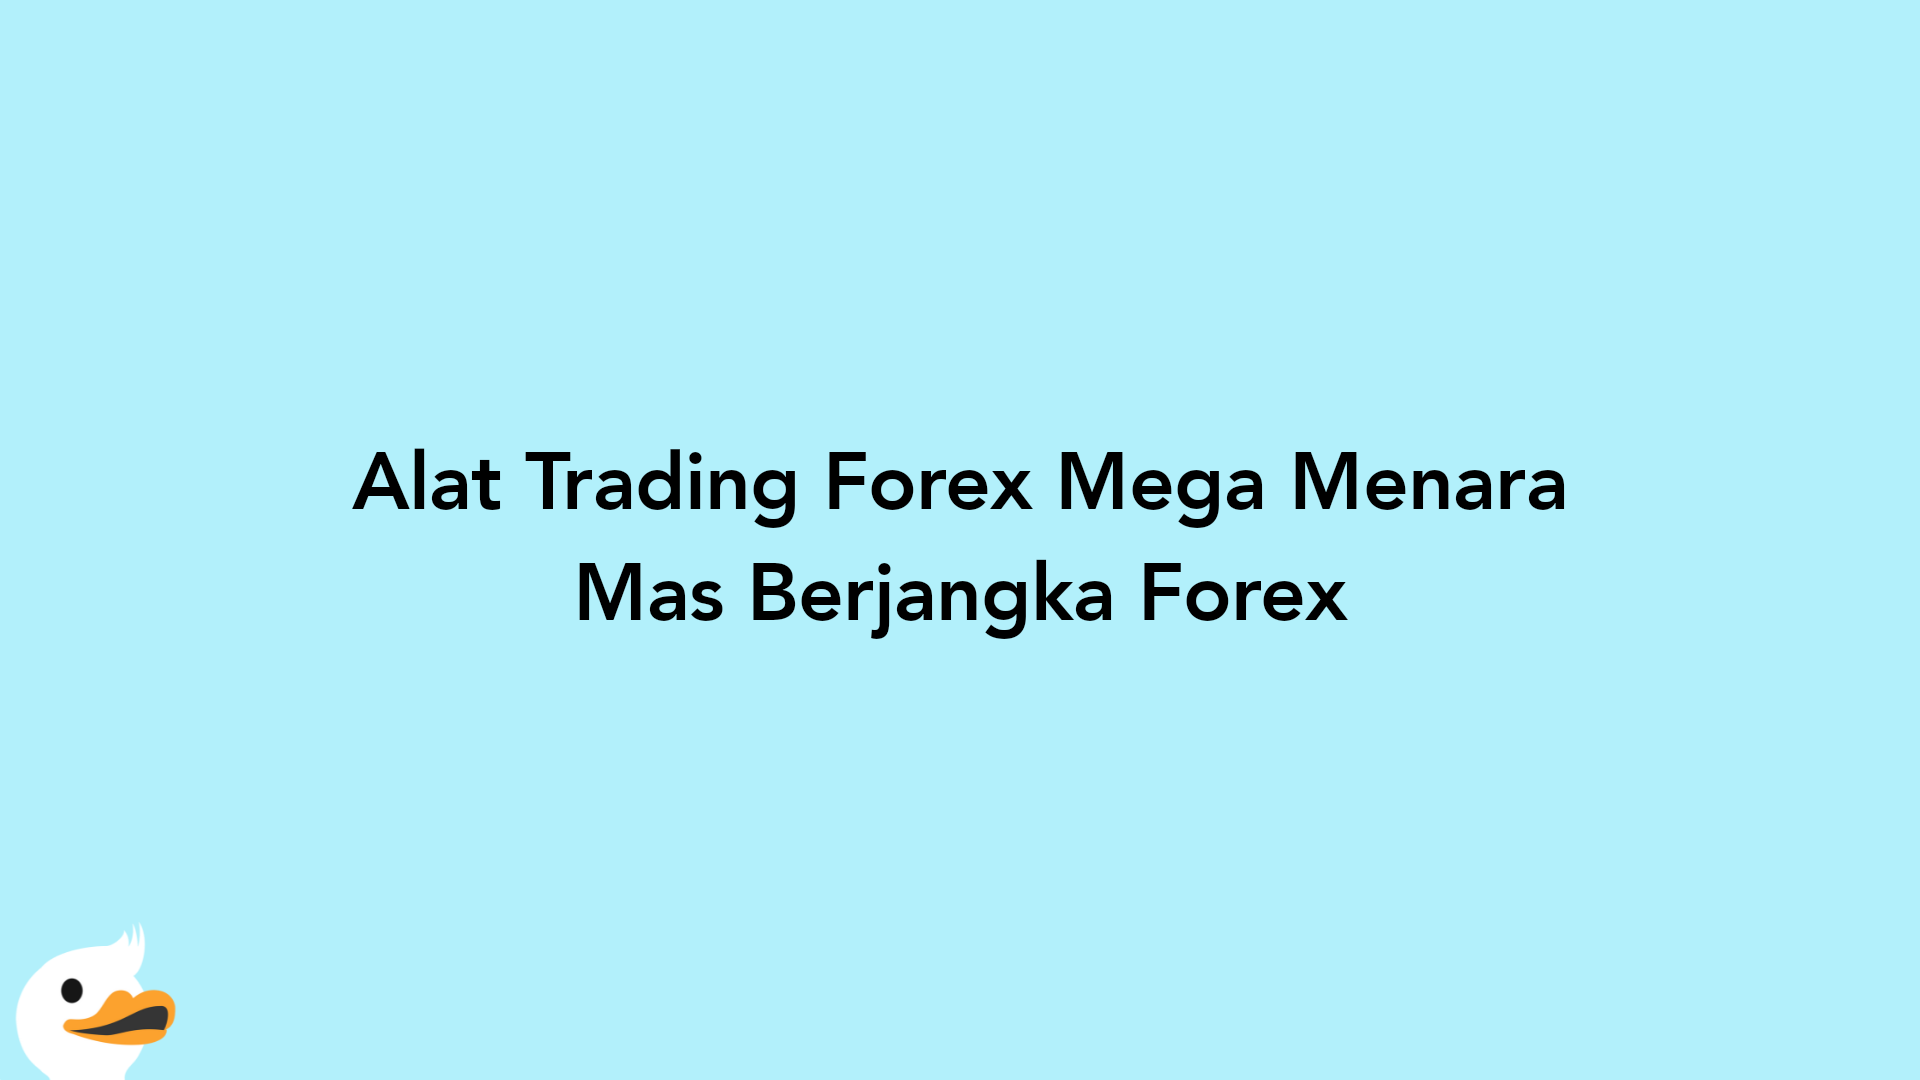 Alat Trading Forex Mega Menara Mas Berjangka Forex